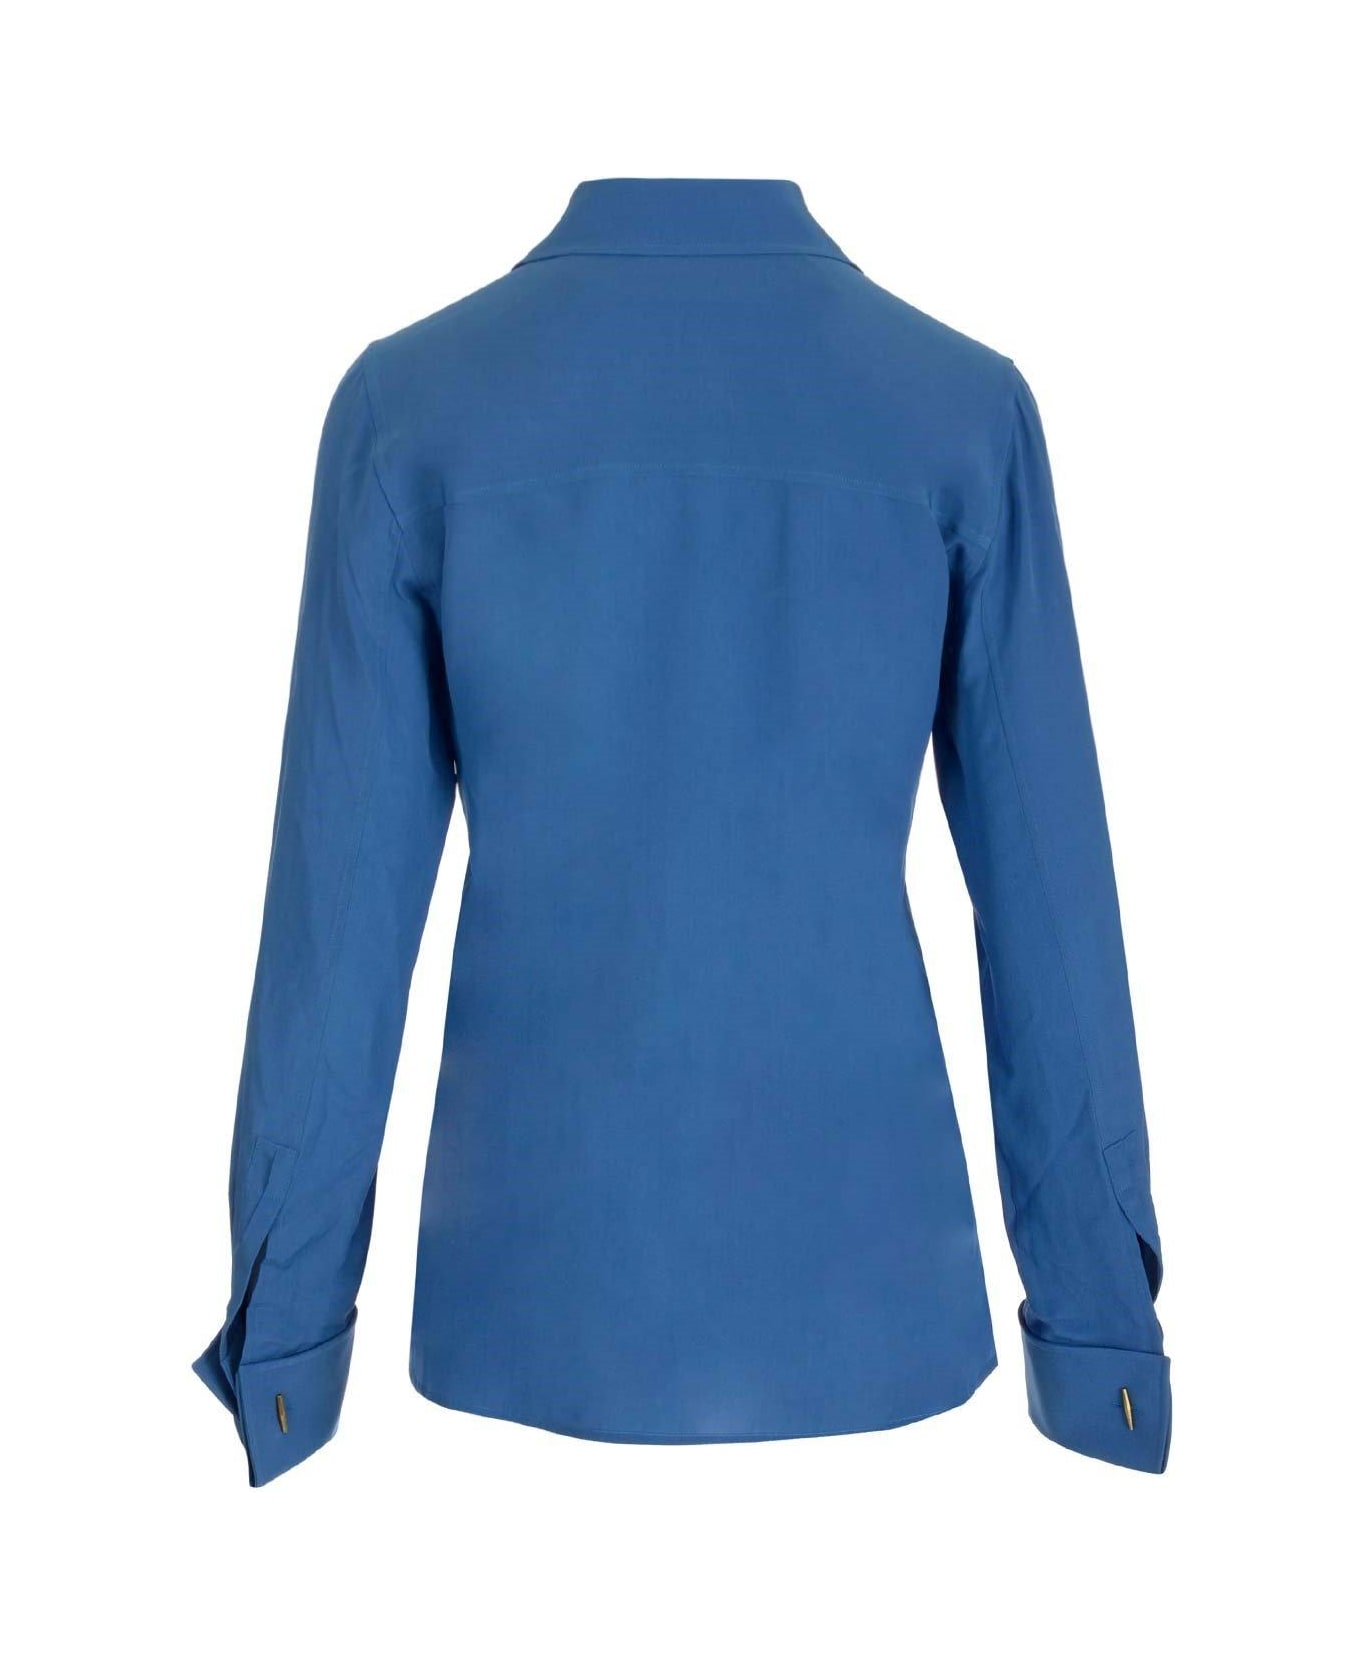 Saint Laurent Crepe De Chine Fitted Shirt - Deep blue